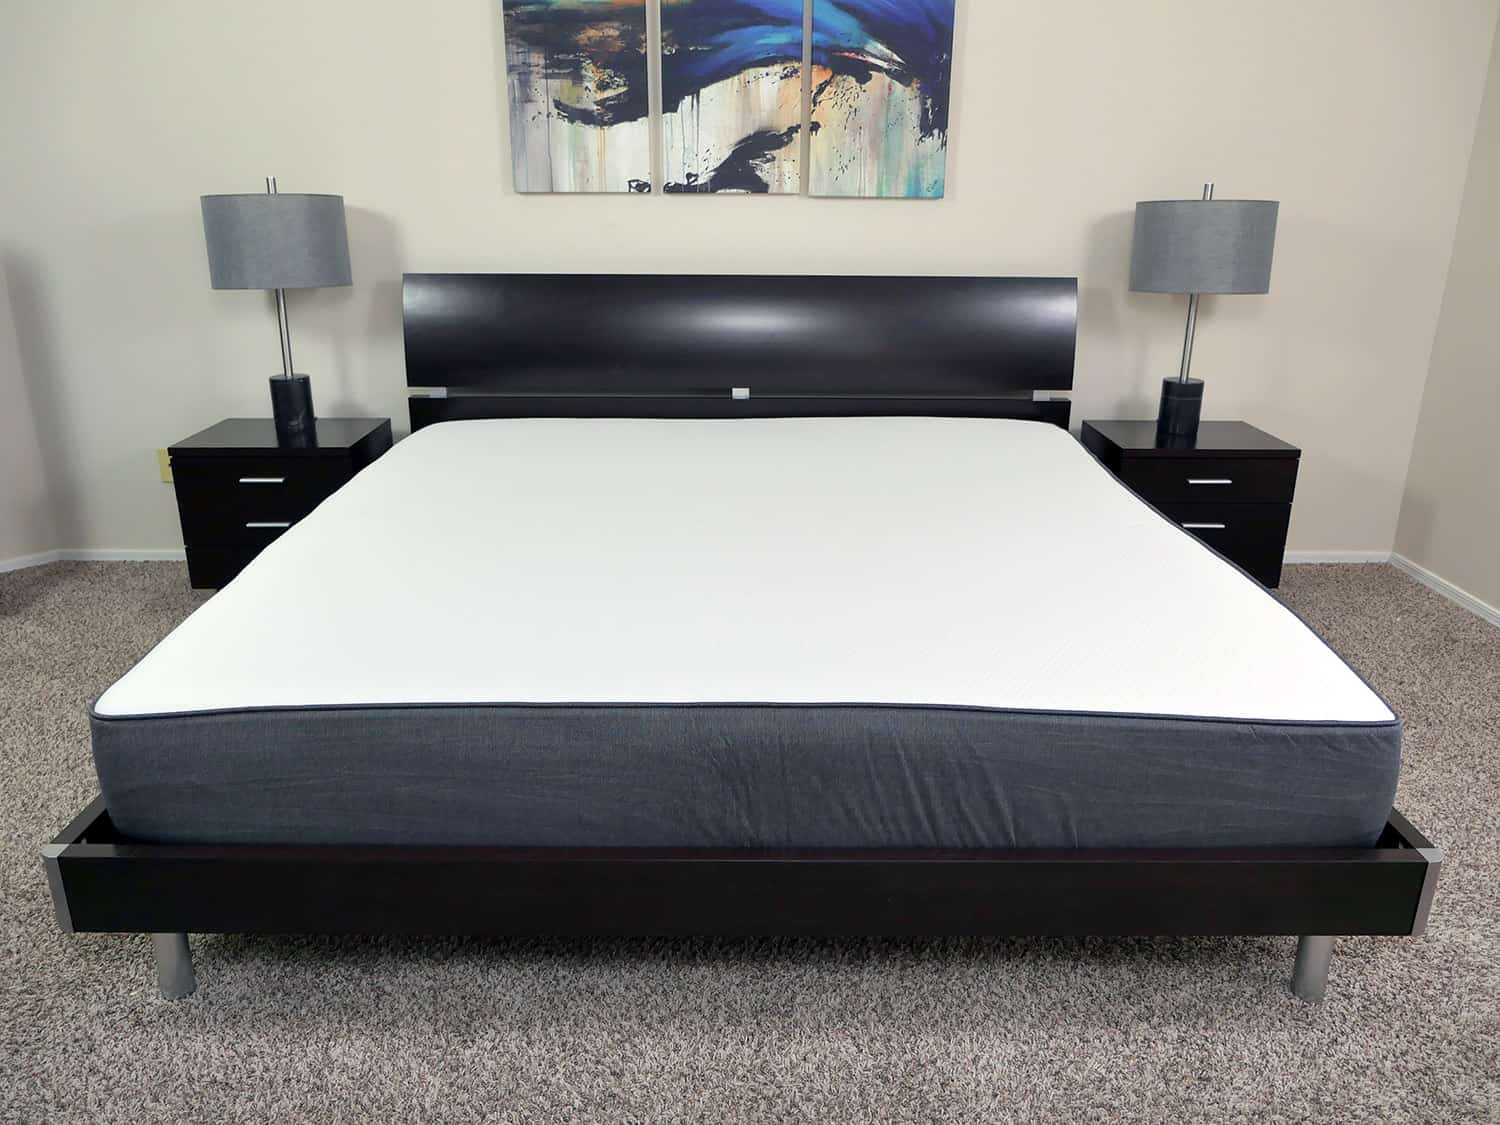 casper mattress cover care